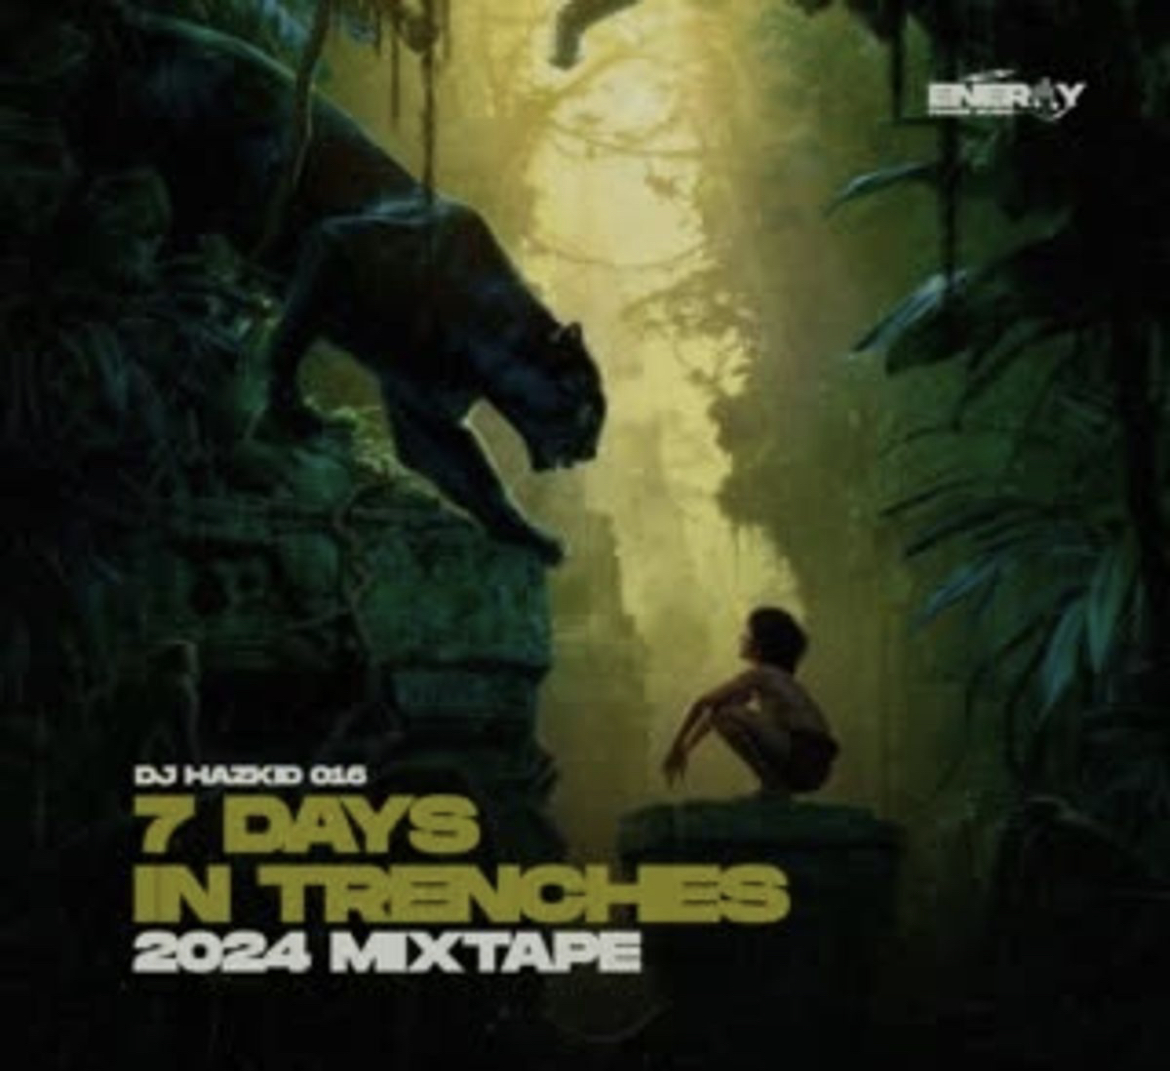 DJ Hazkid 016 - 7 Days in Trenches 2024 Mixtape Mp3 download